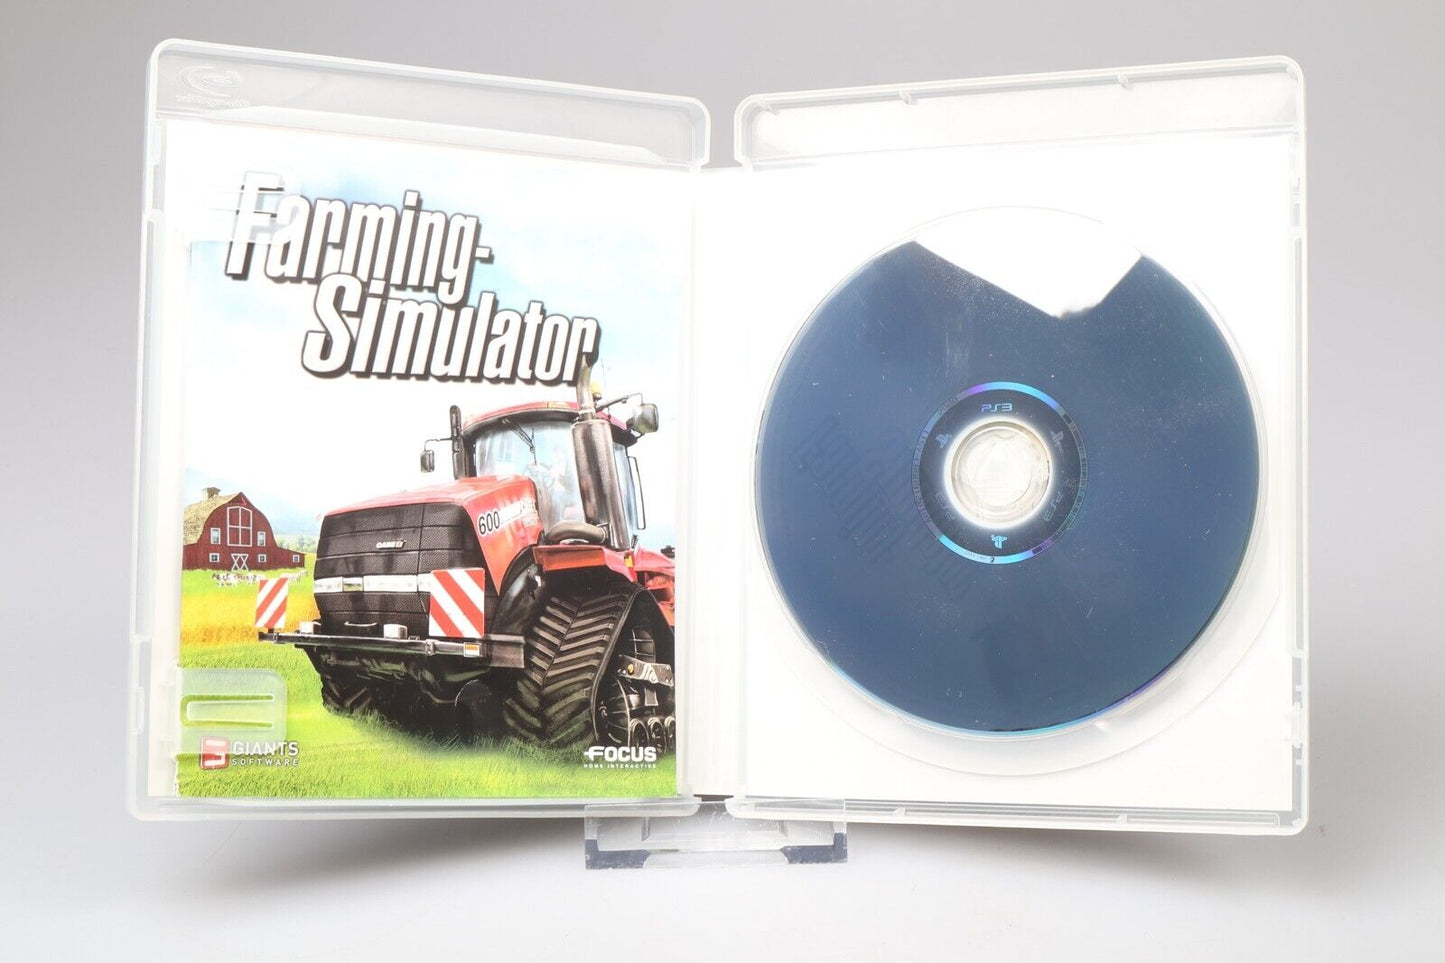 PS3 | Landbouwsimulator (PAL)(NL/FR) 